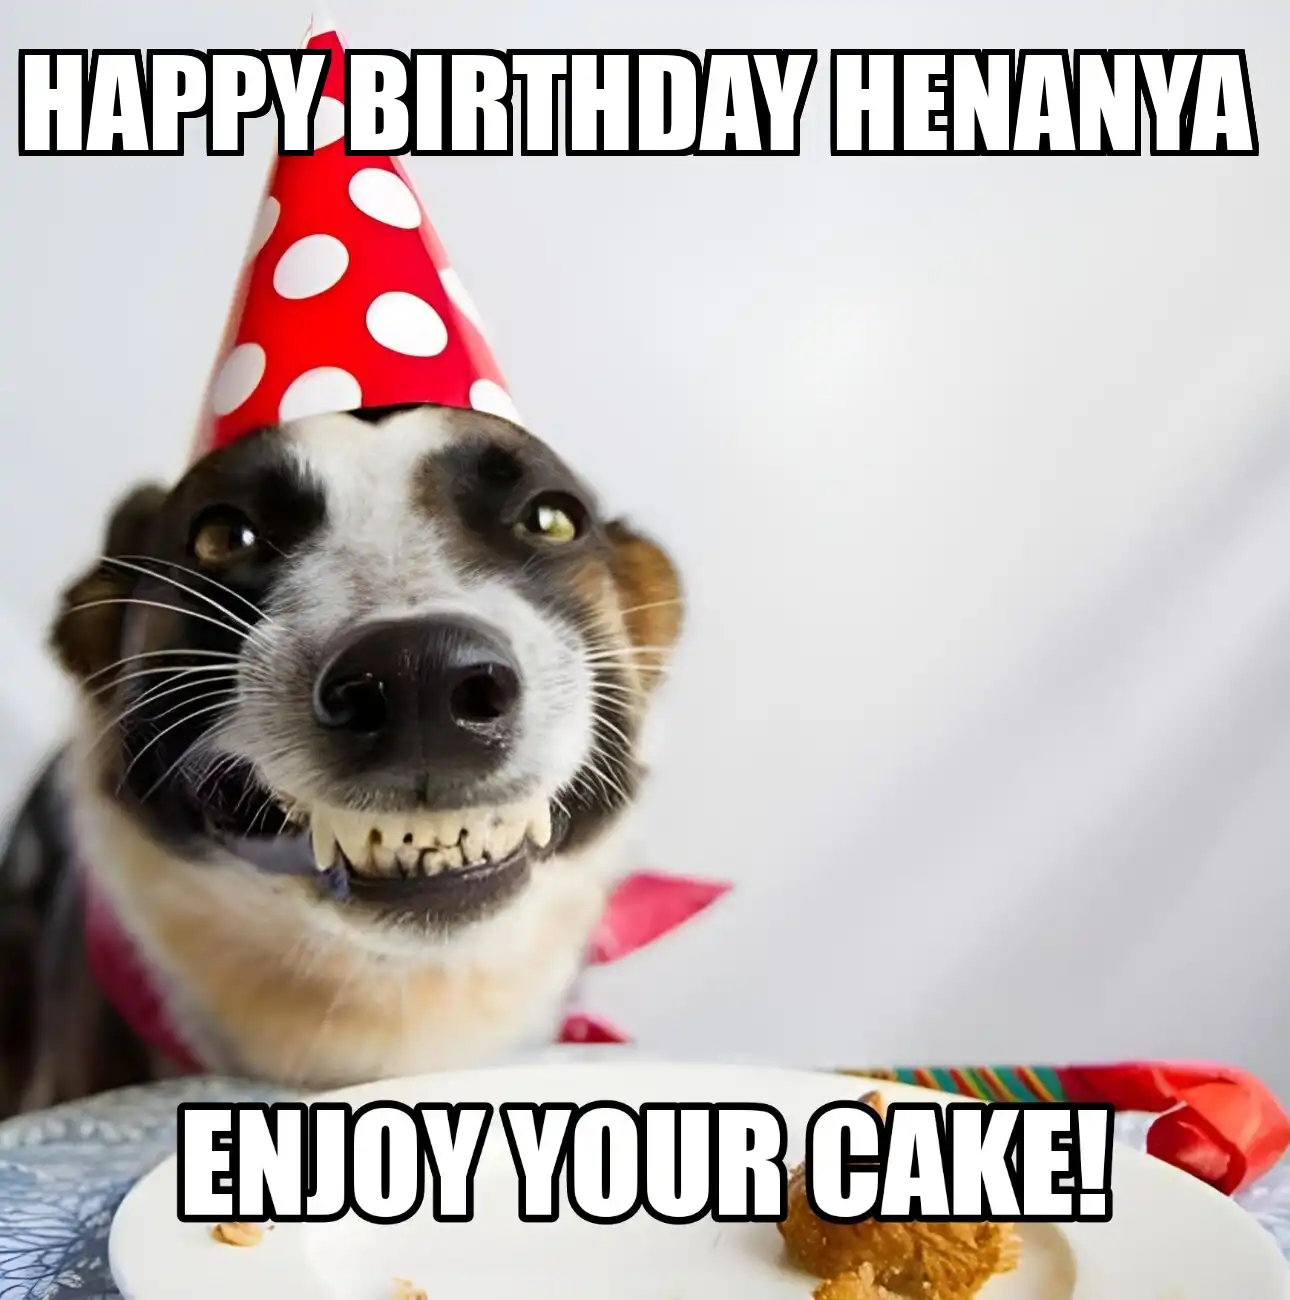 Happy Birthday Henanya Enjoy Your Cake Dog Meme